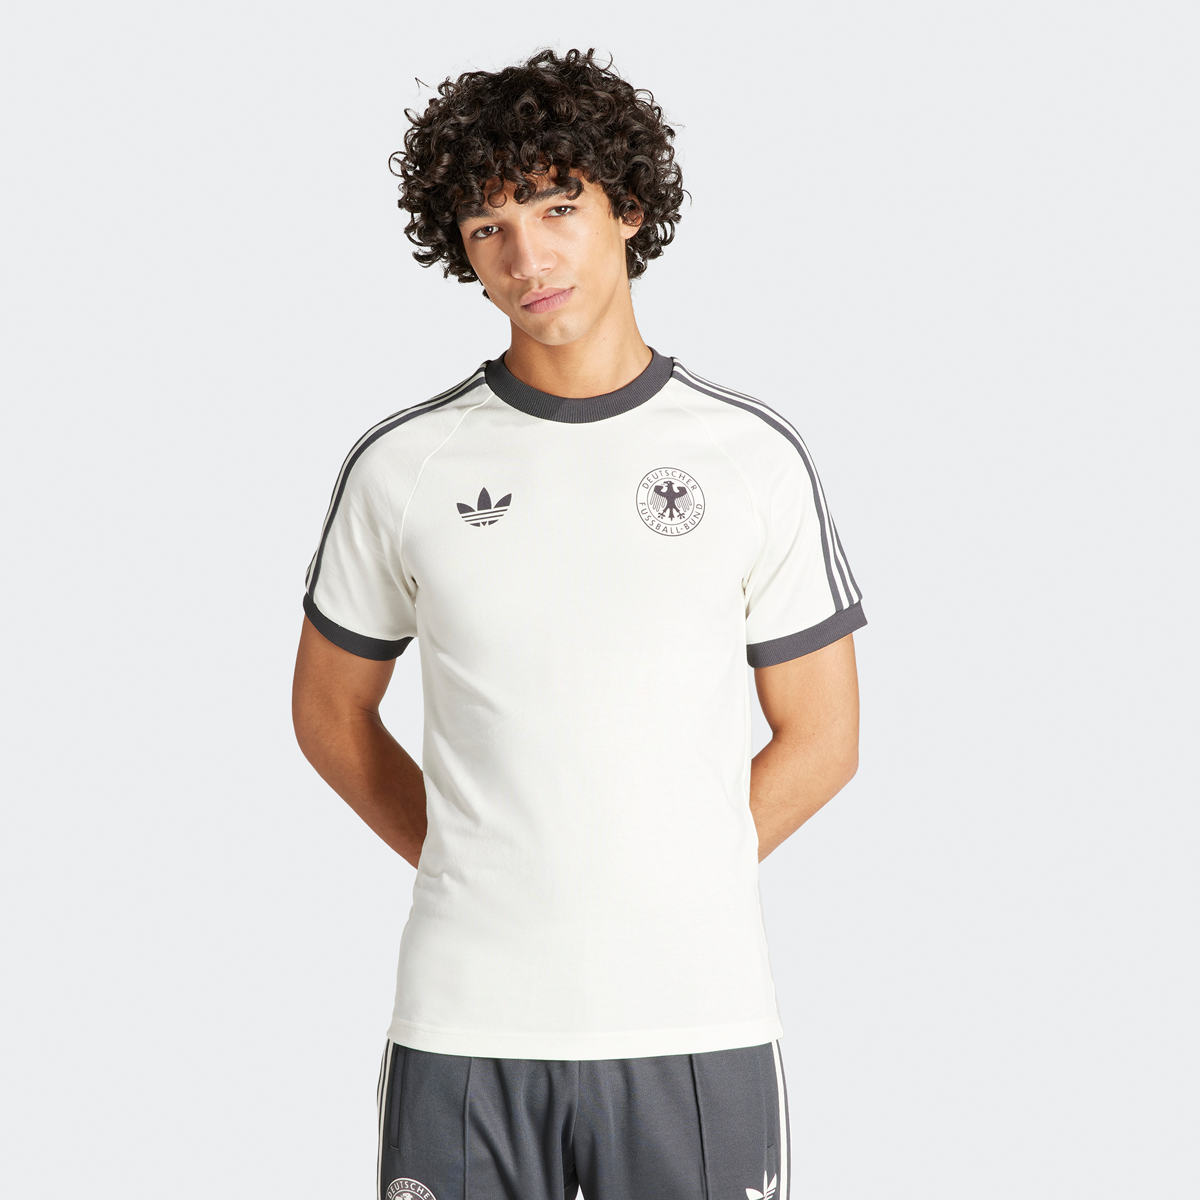 Adidas Originals Dfb Duitsland 3-stripes T-shirt Football Pack T-shirts Heren off white maat: M beschikbare maaten:S M XL